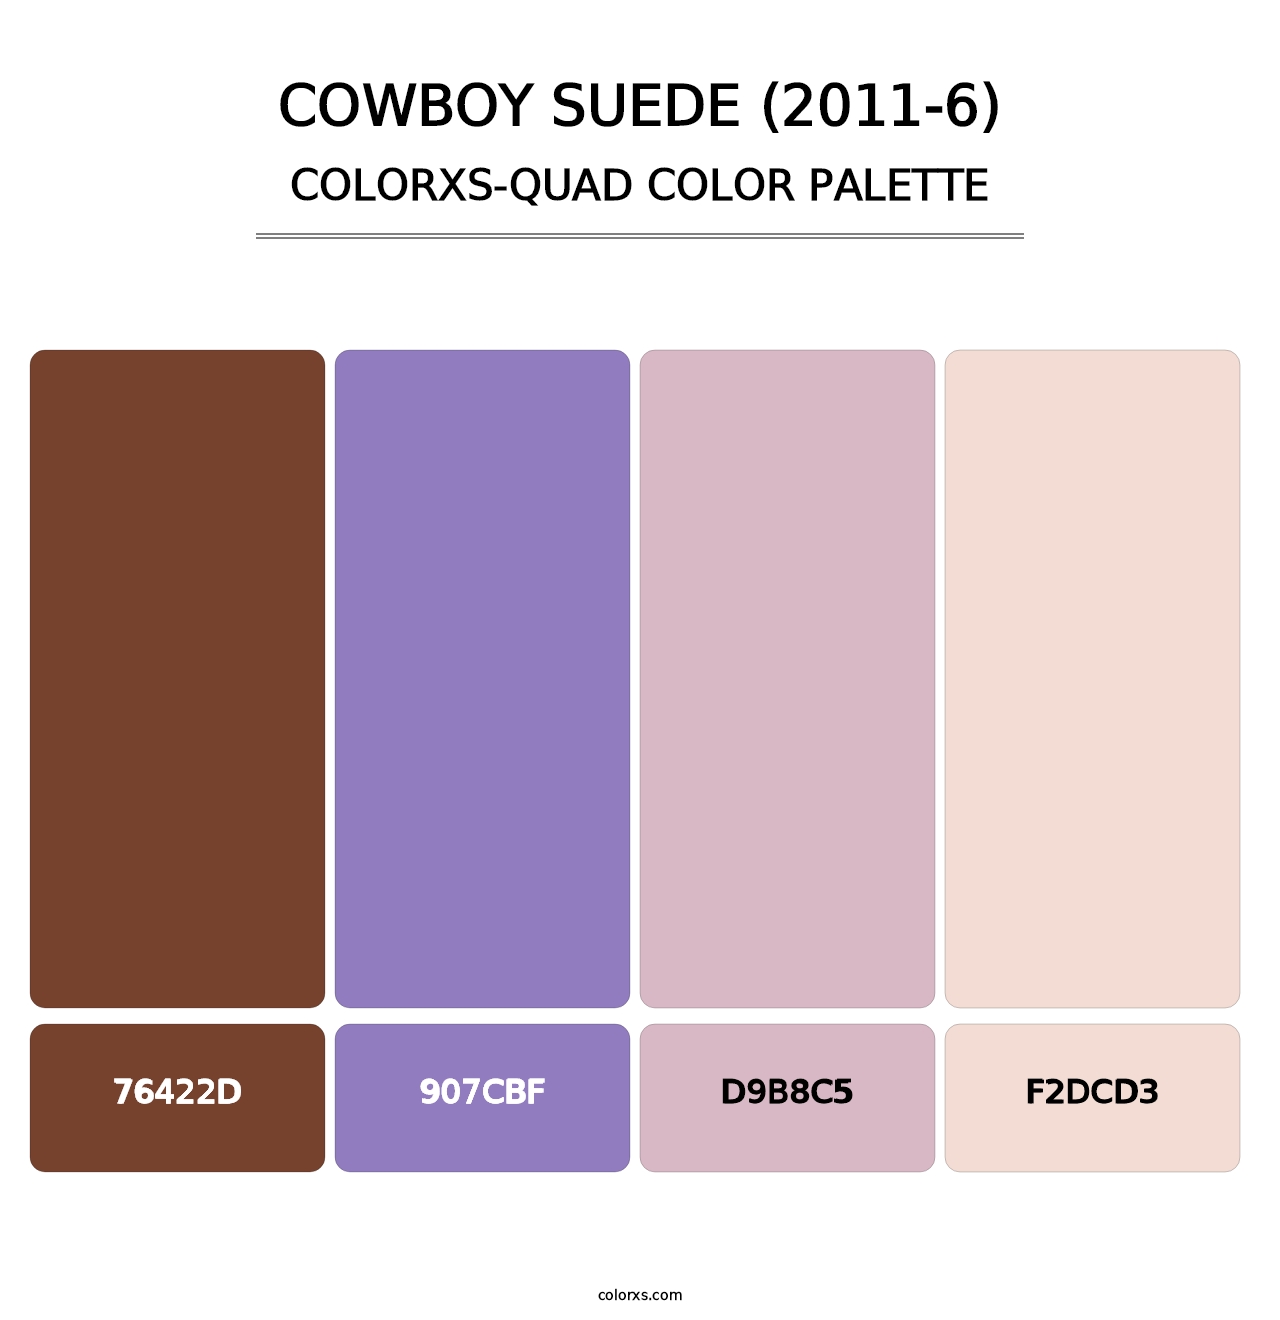 Cowboy Suede (2011-6) - Colorxs Quad Palette